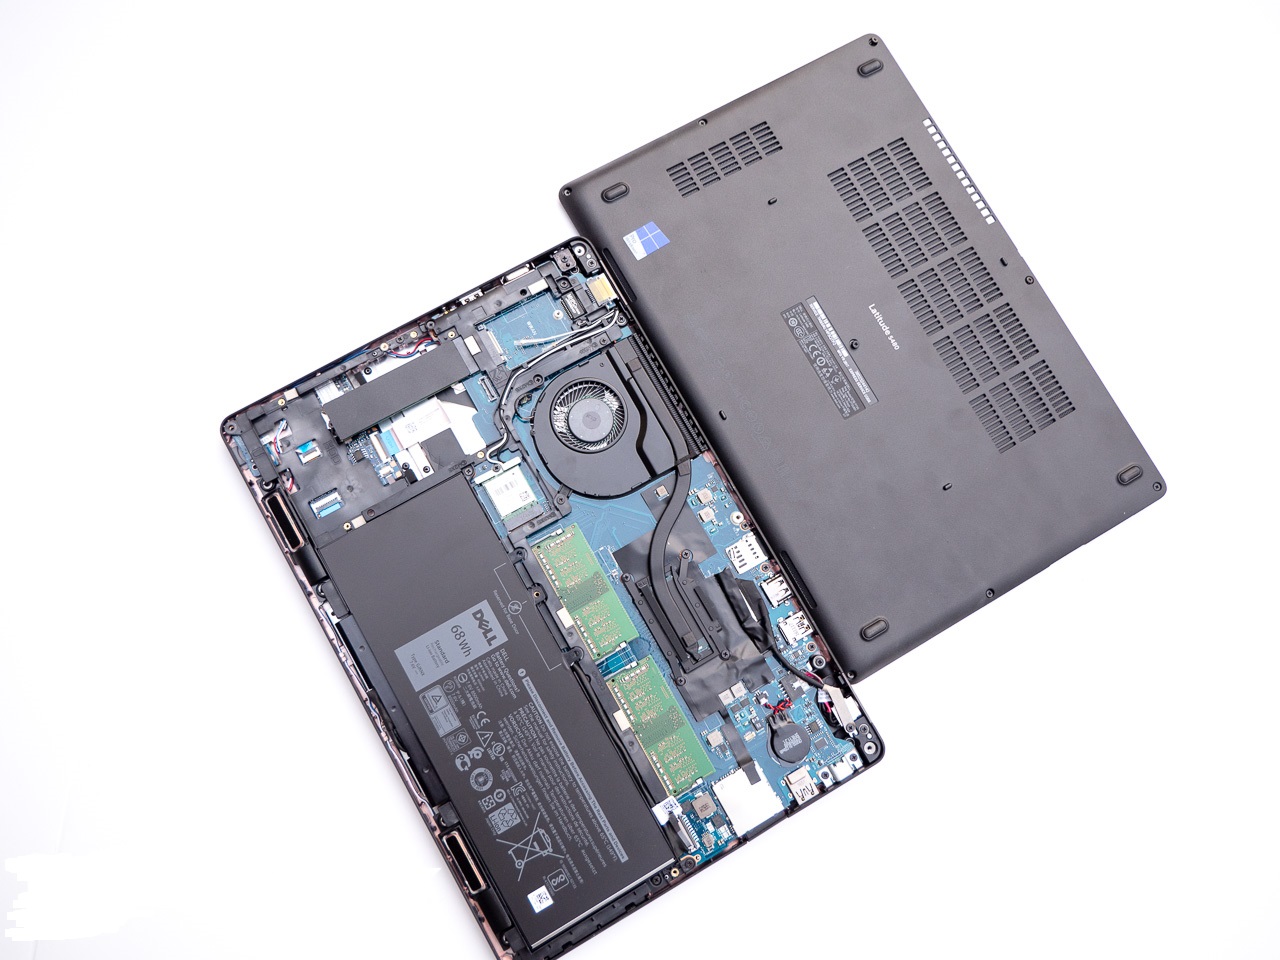 لپ تاپ استوک Dell Latitude 5480 Core i5-7440HQ, 8GB RAM, 256GB SSD, 2GB Nvidia Graphic, HD